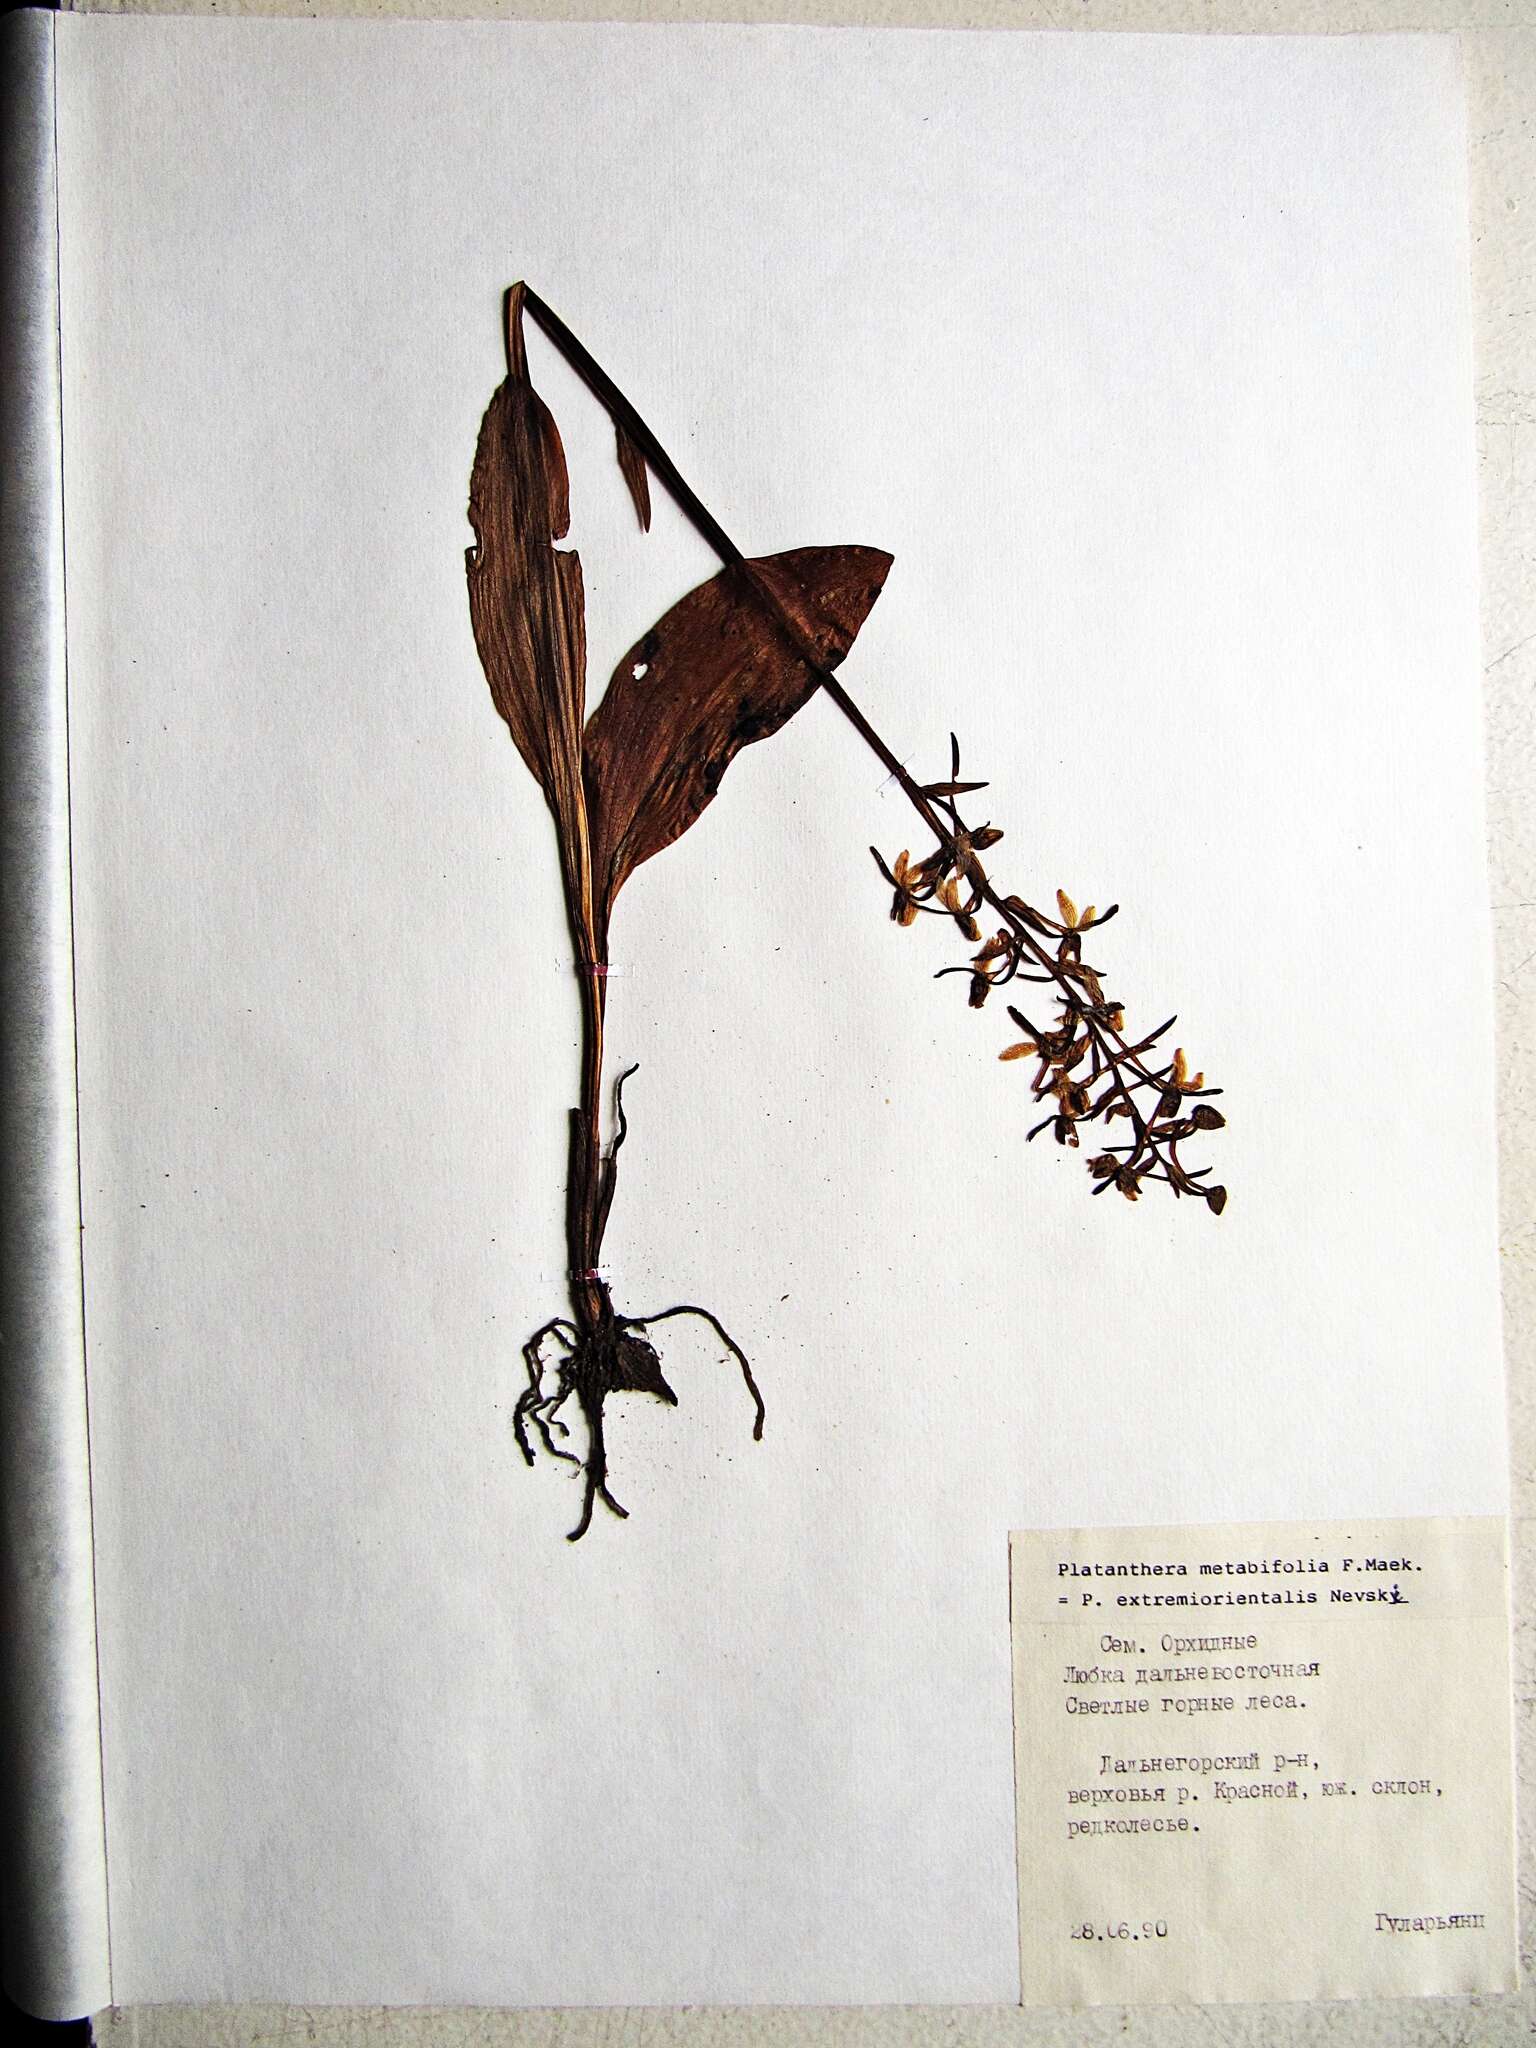 Image of Platanthera metabifolia F. Maek.